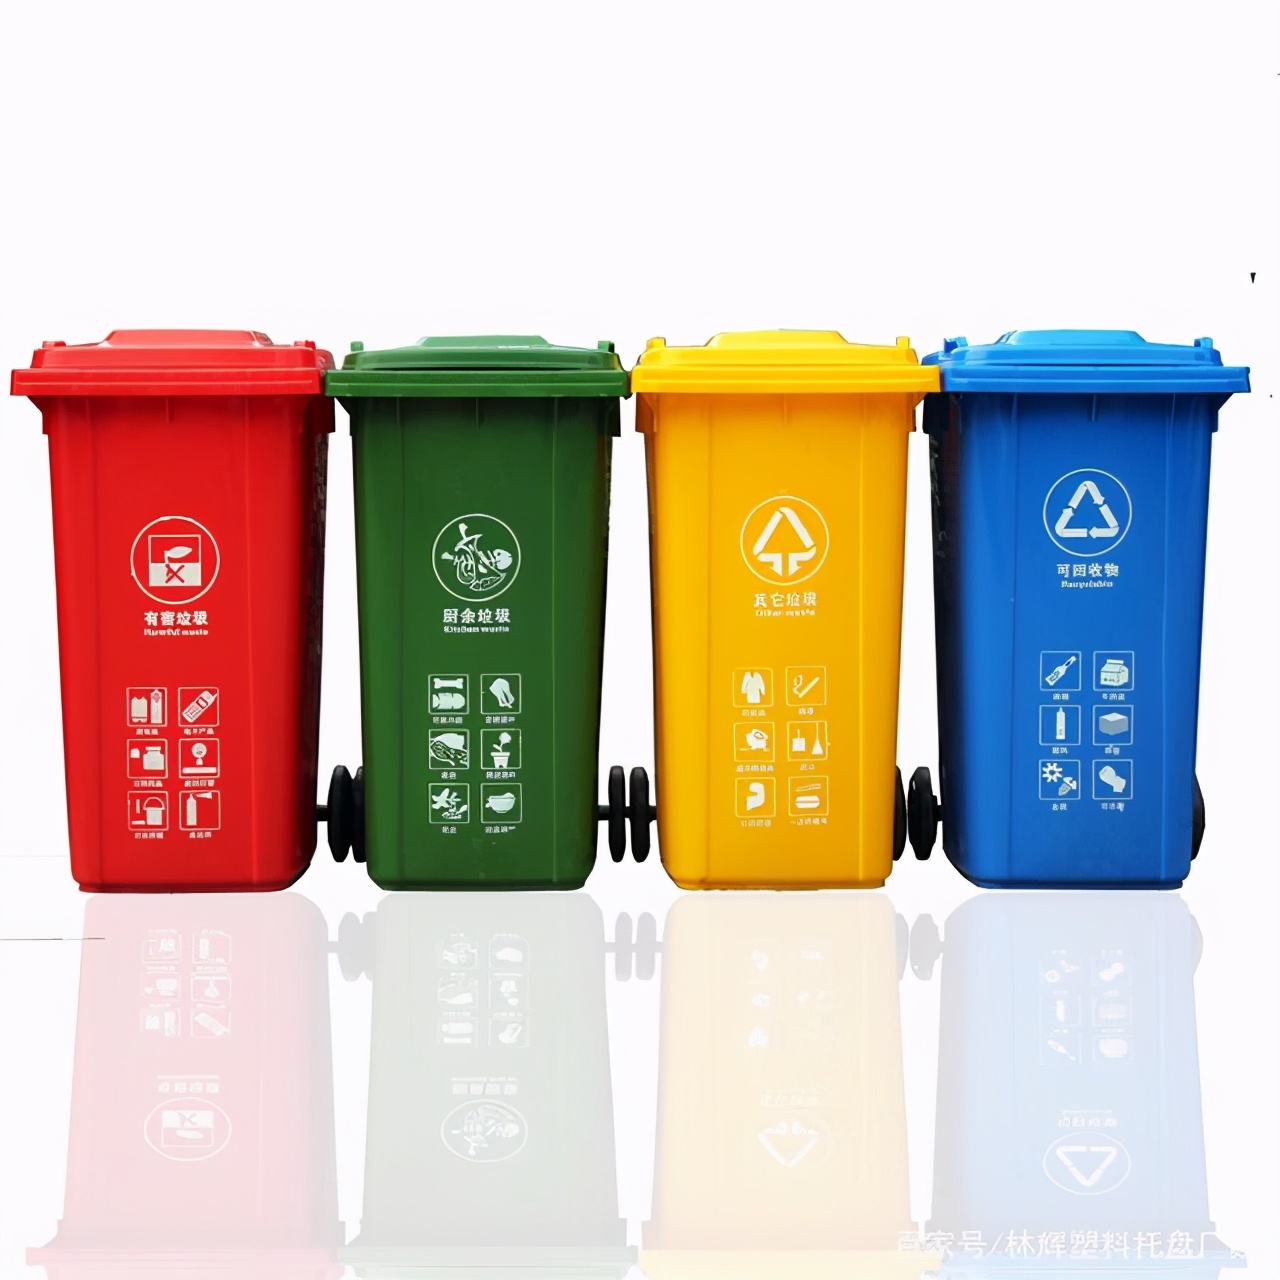 塑料垃圾桶为何会成为分类垃圾桶的第一选择呢？